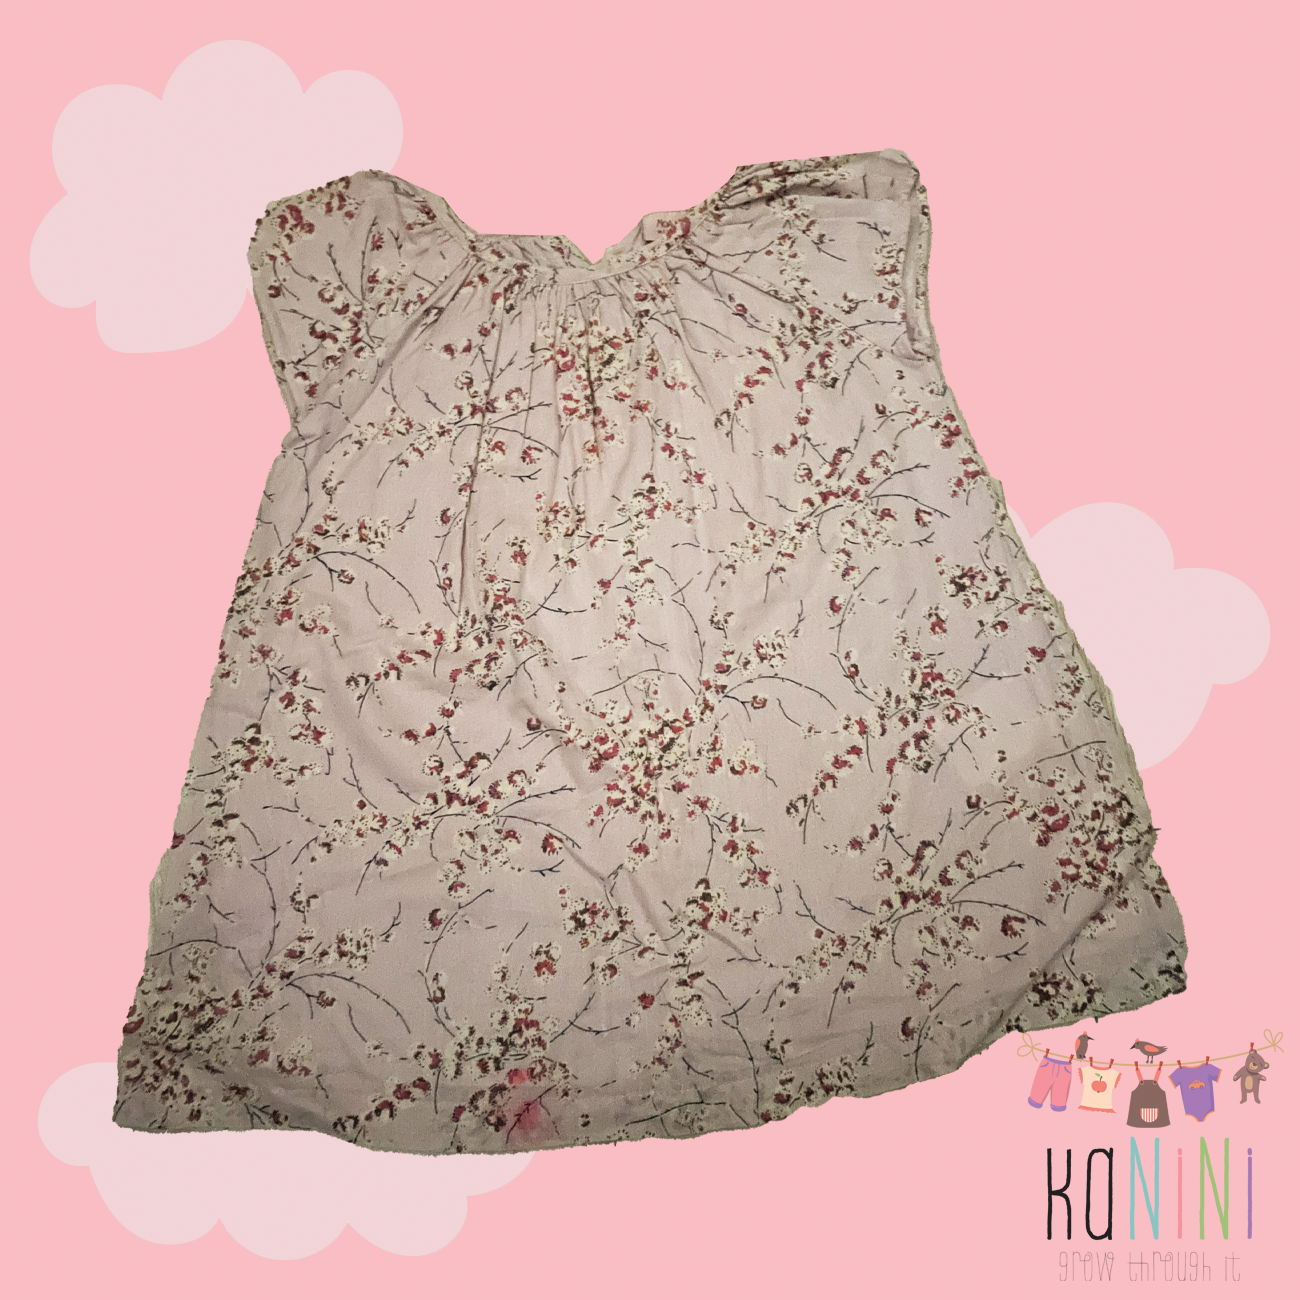 Featured image for “Noa Noa 18 Months Girls Flower Print Dress”